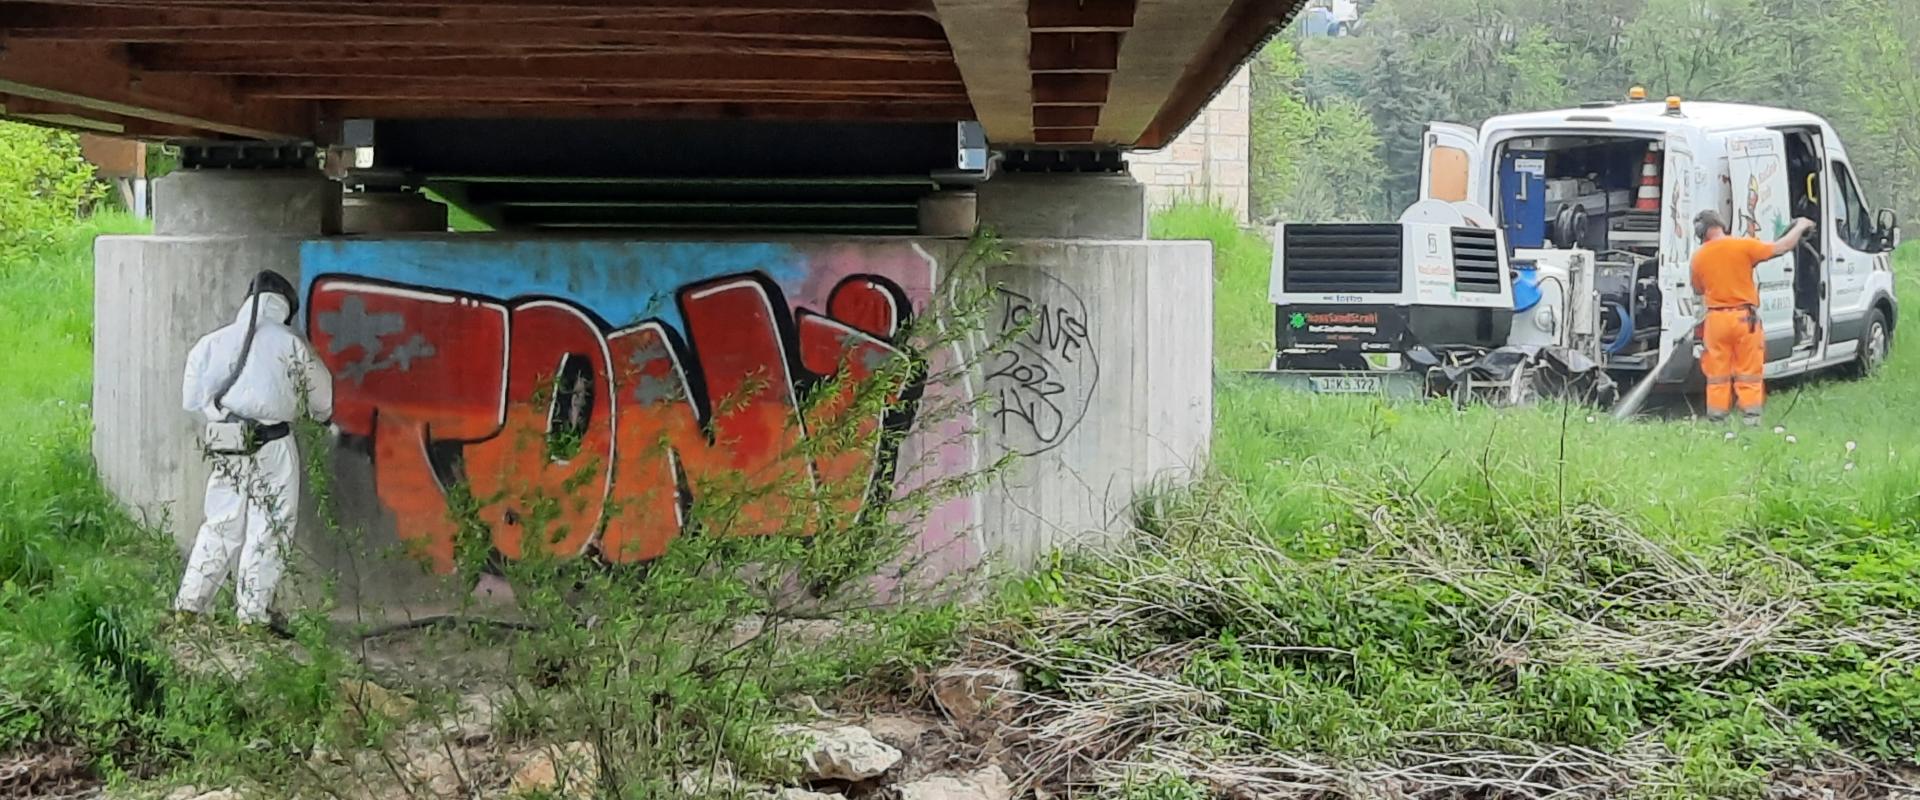 Graffiti removal on the Kunitz house bridge 